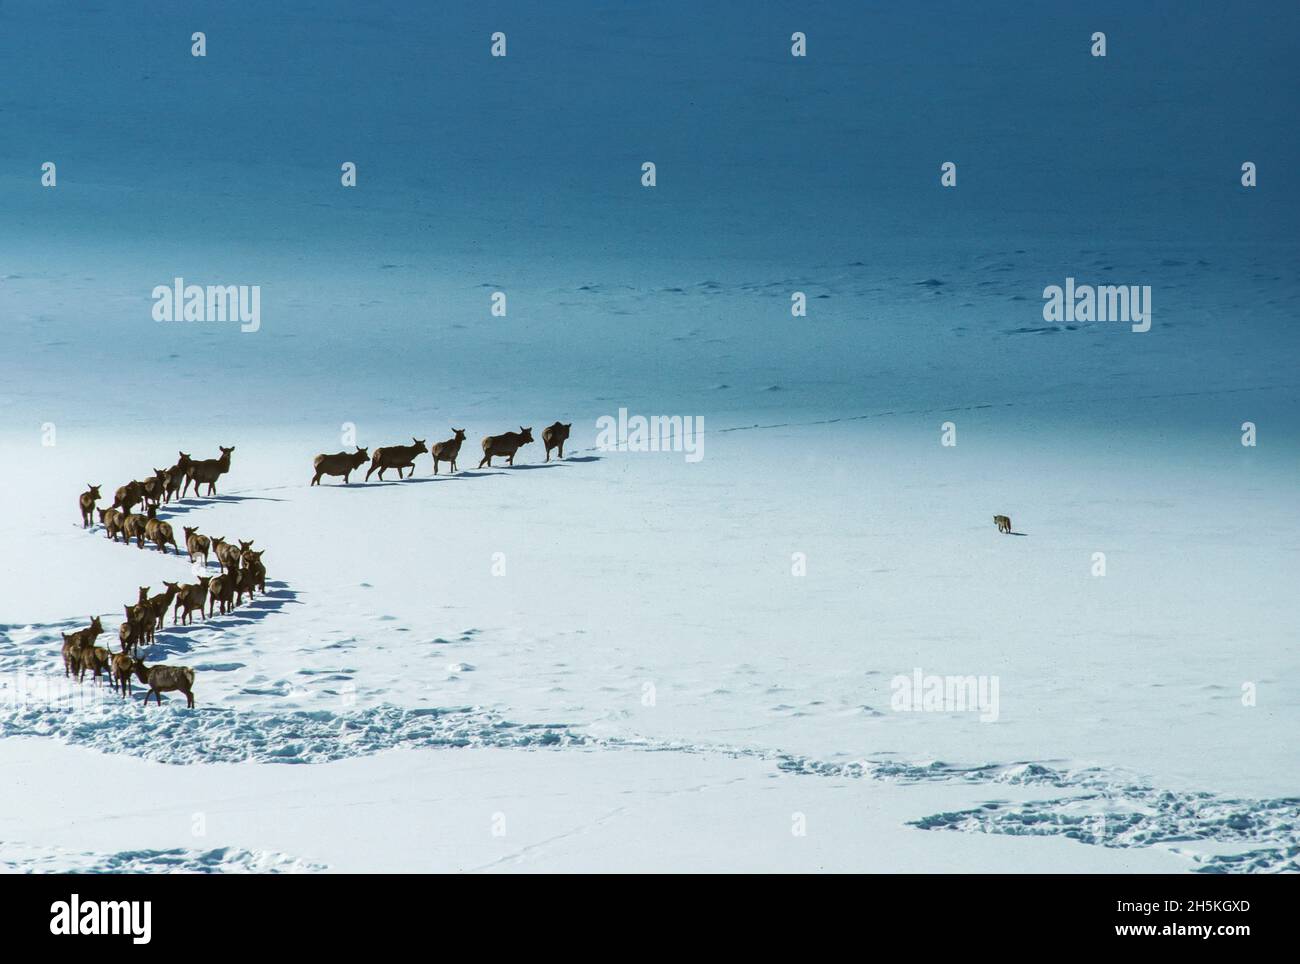 Wapiti (Cervus canadensis) se déplaçant dans une ligne incurvée le long des champs enneigés tandis qu'un coyote (Canis latrans) vérifie la neige... Banque D'Images